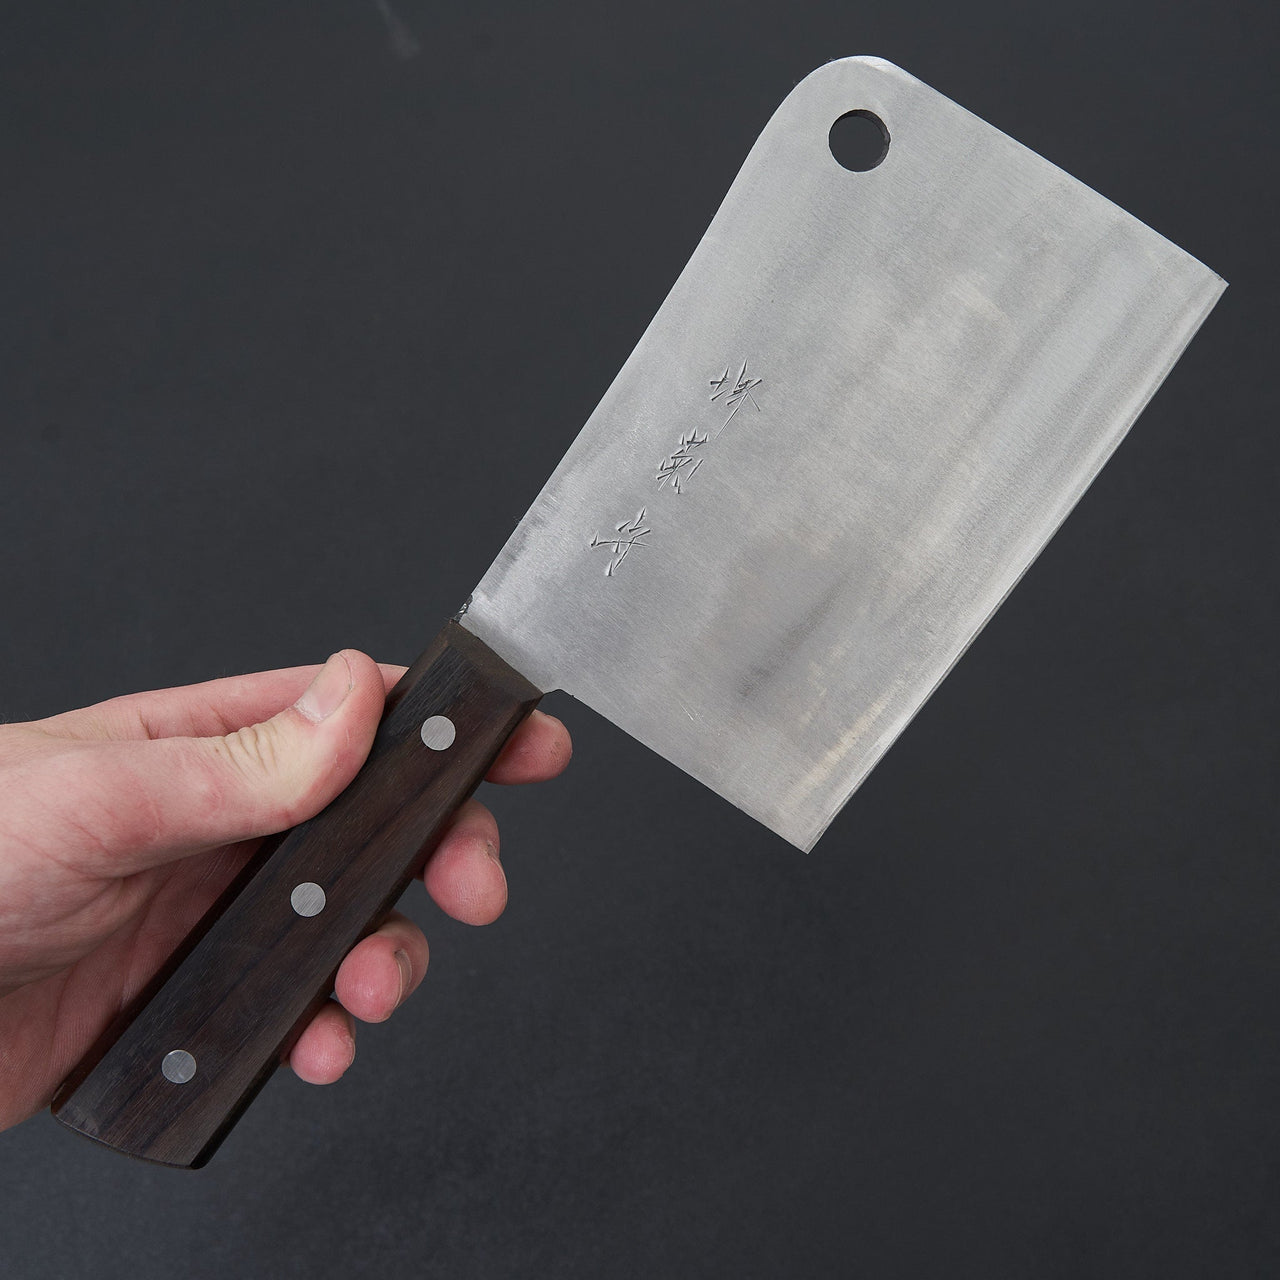 Sakai Kikumori Nihonko Carbon Cleaver 150mm-Knife-Sakai Kikumori-Carbon Knife Co